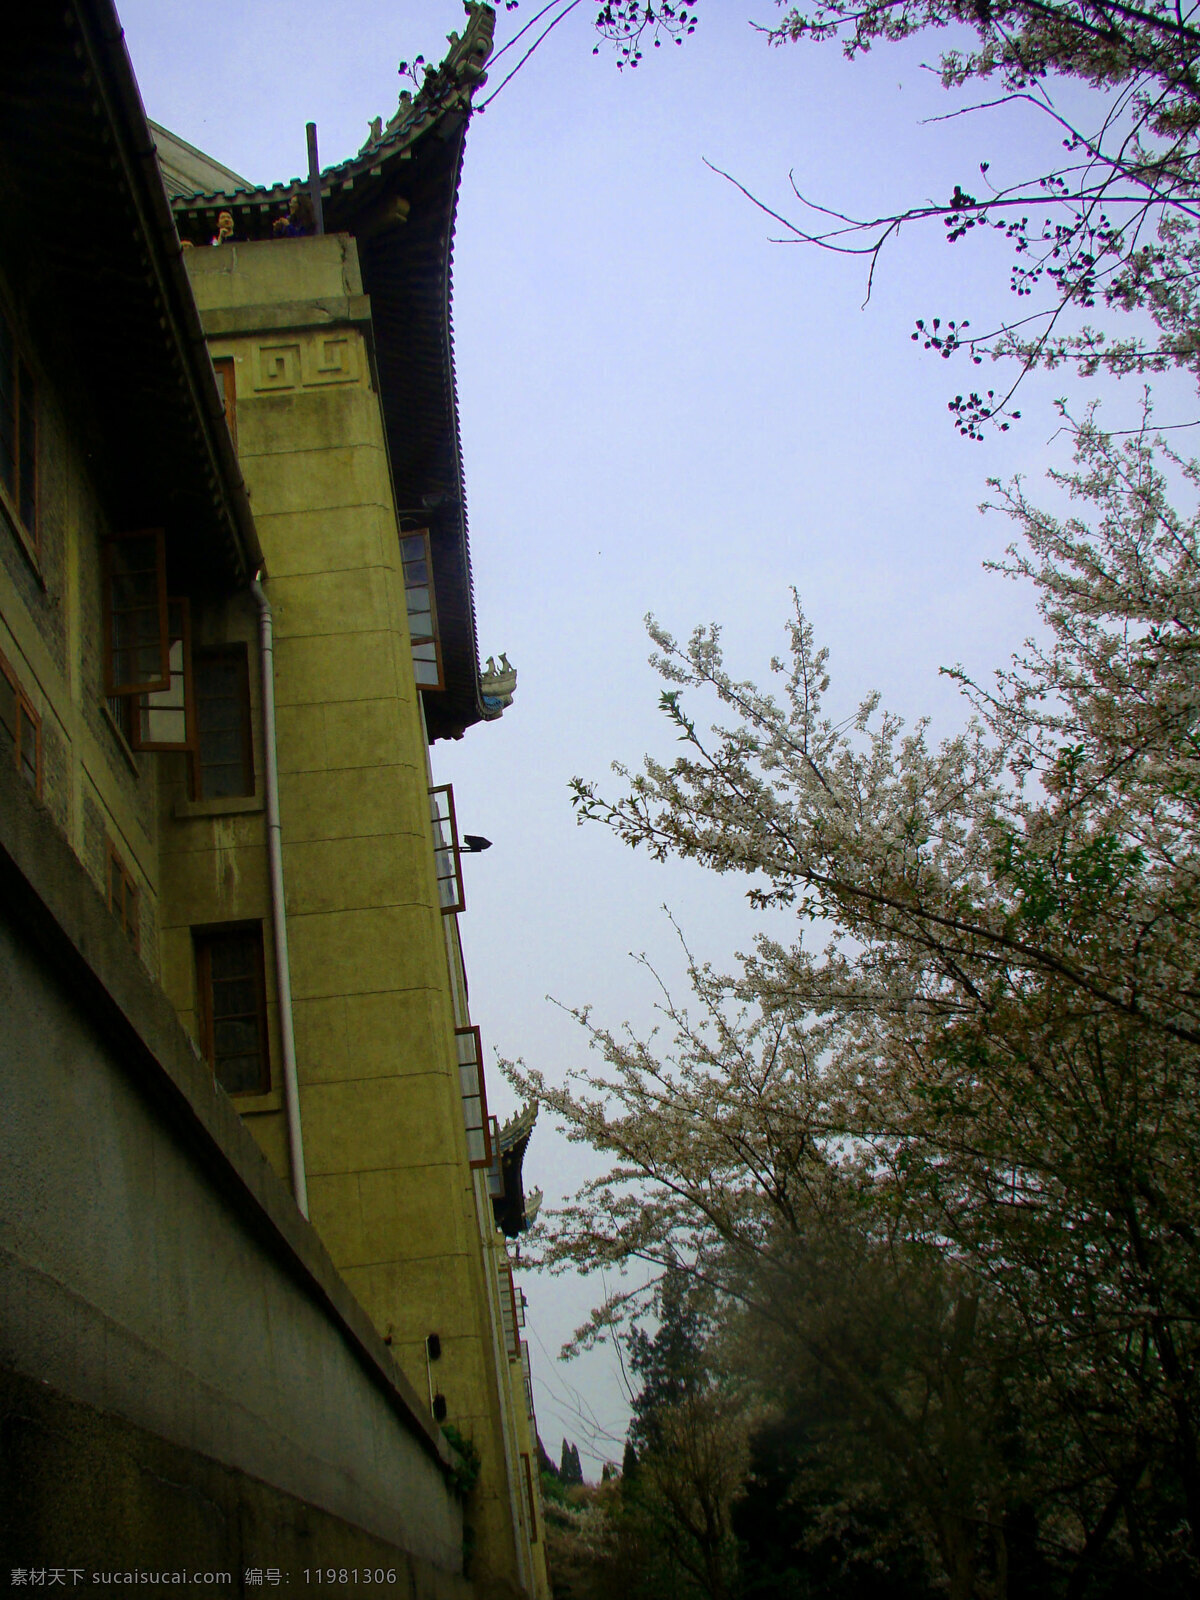 武汉大学 樱花节 樱花 古朴建筑 校园建筑 建筑摄影 建筑园林 黑色